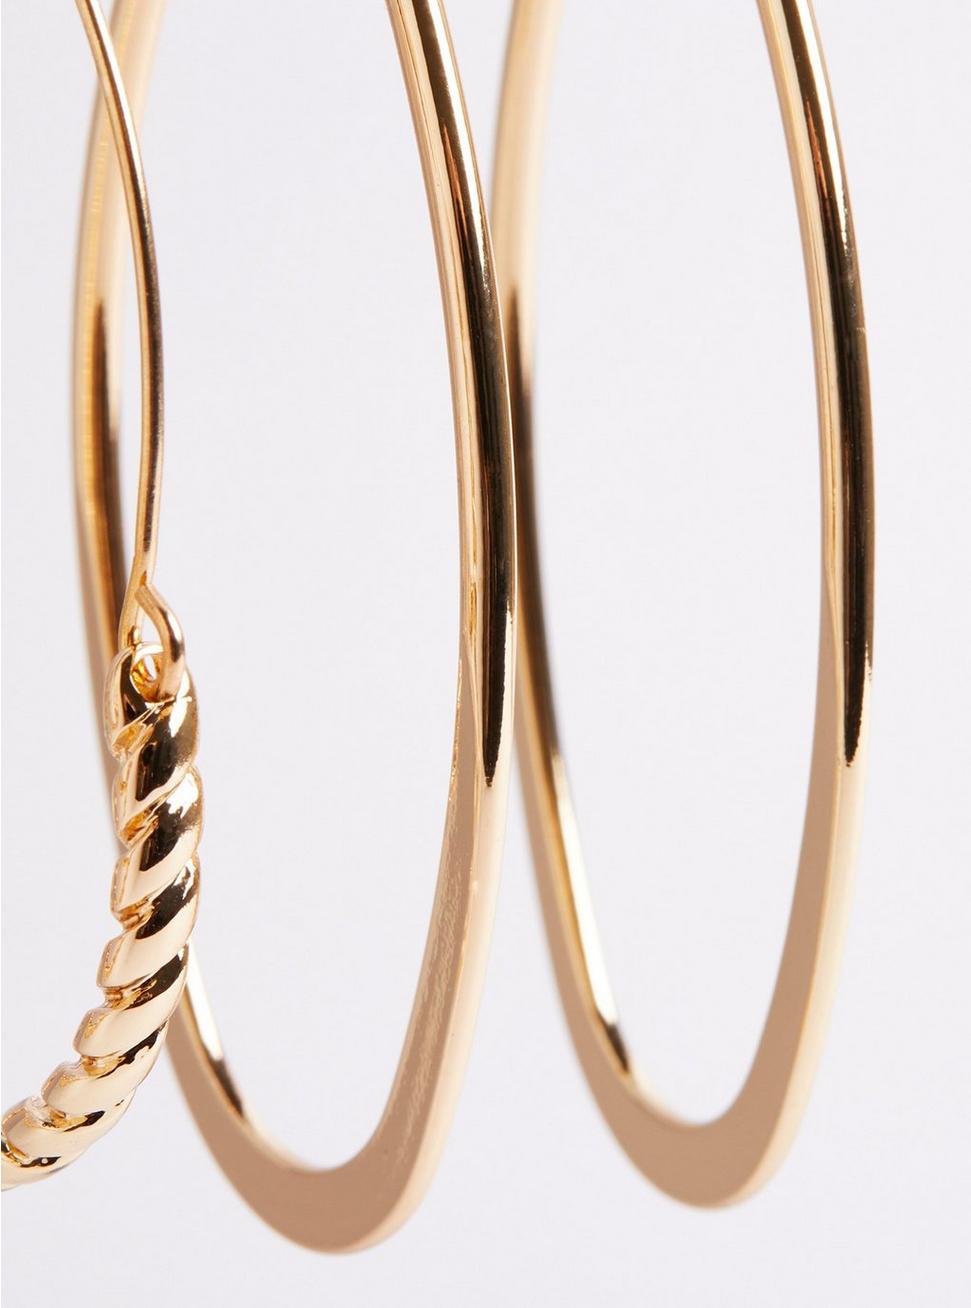 Plus Size - Hoop & Stud Earrings Set of 6 - Gold Tone - Torrid